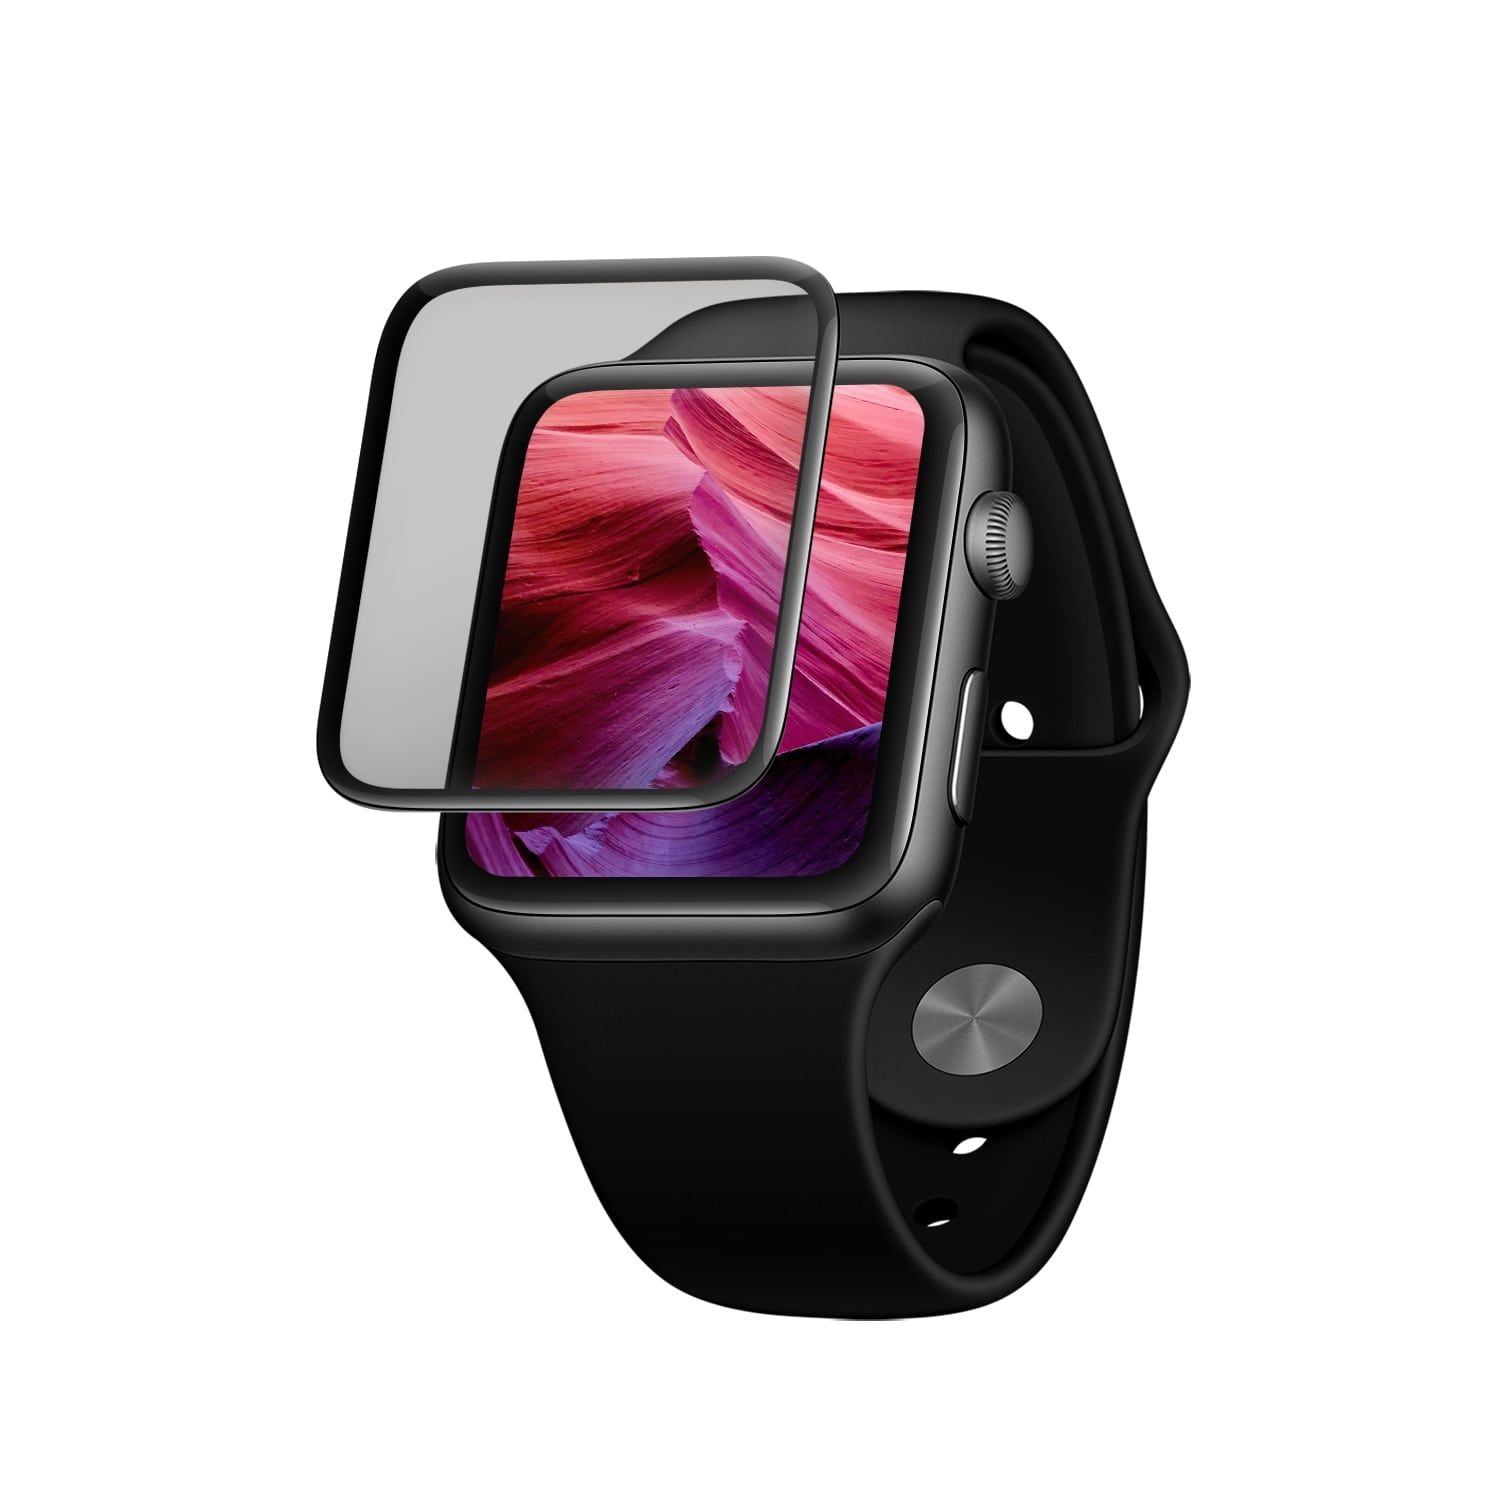 Ochranné tvrzené sklo 3D Full-Cover pro Apple Watch 40mm s aplikátorem, s lepením přes celý displej, černé